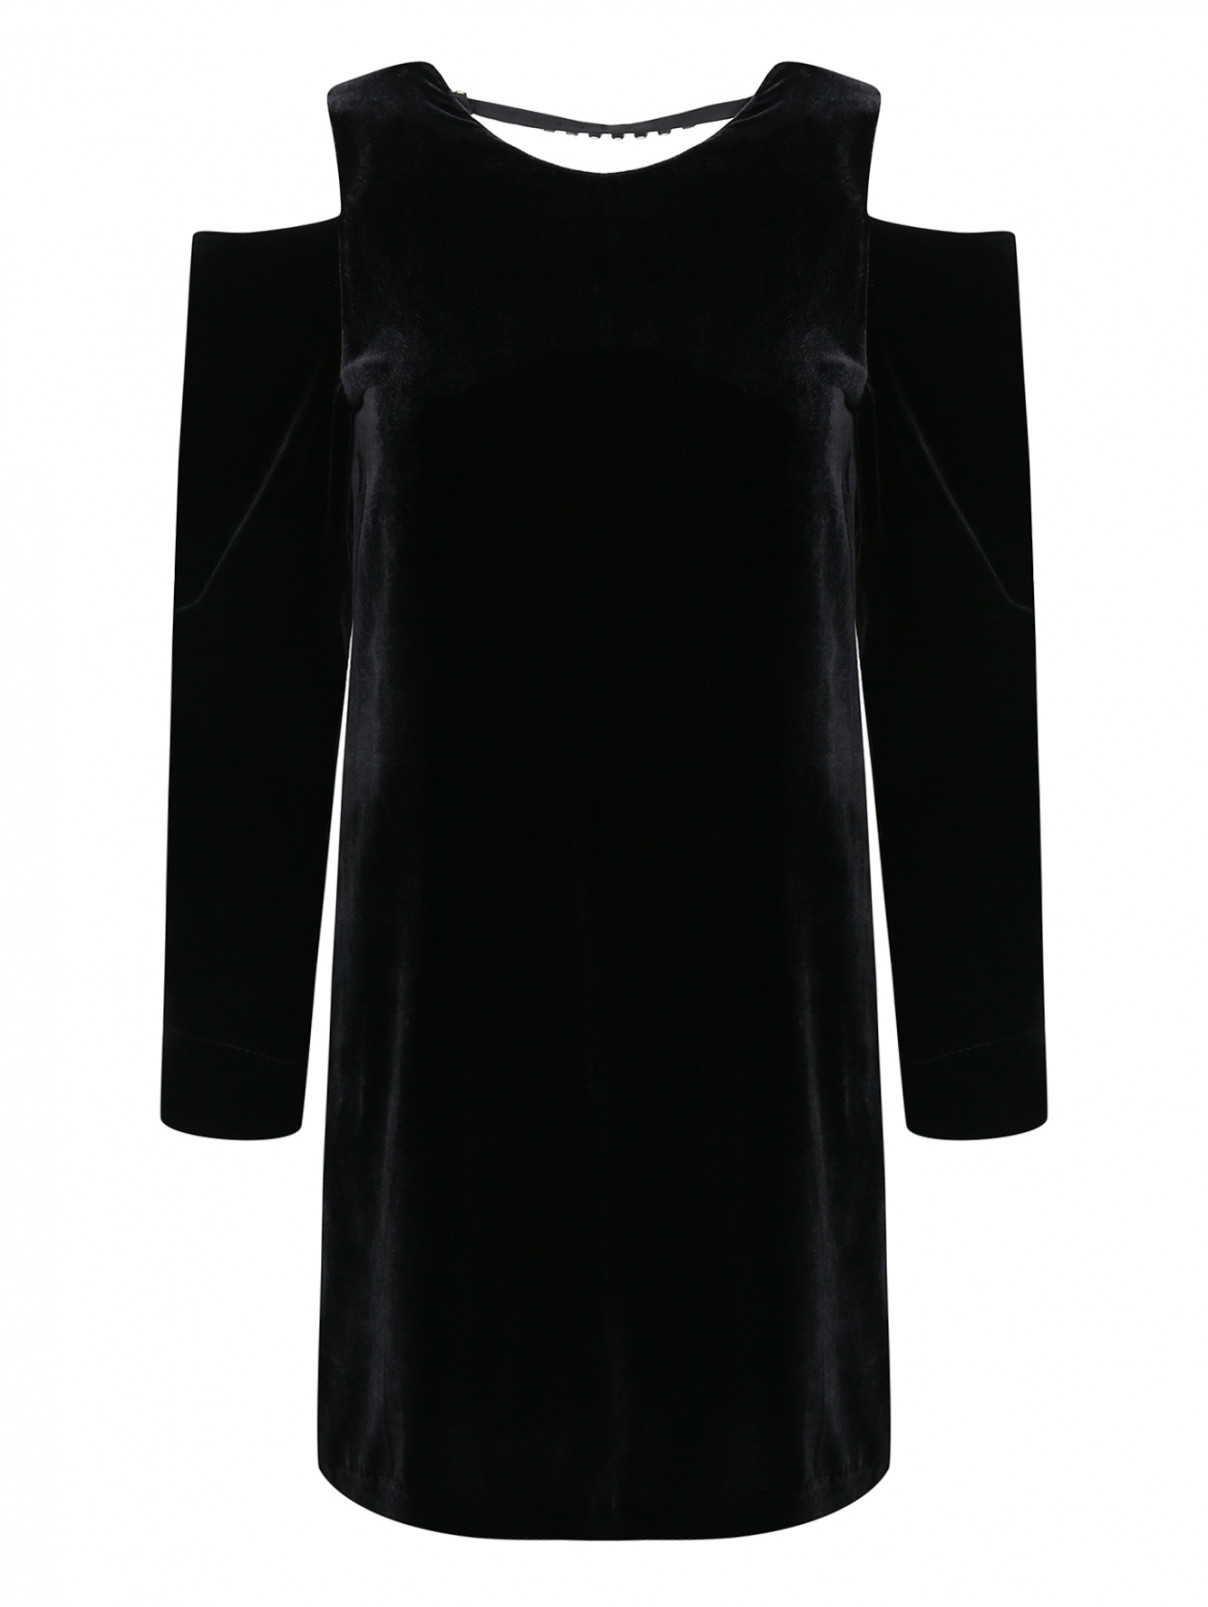 Платье мини с открытыми плечами и аппликацией из страз на спине Mo&Co  –  Общий вид  – Цвет:  Черный